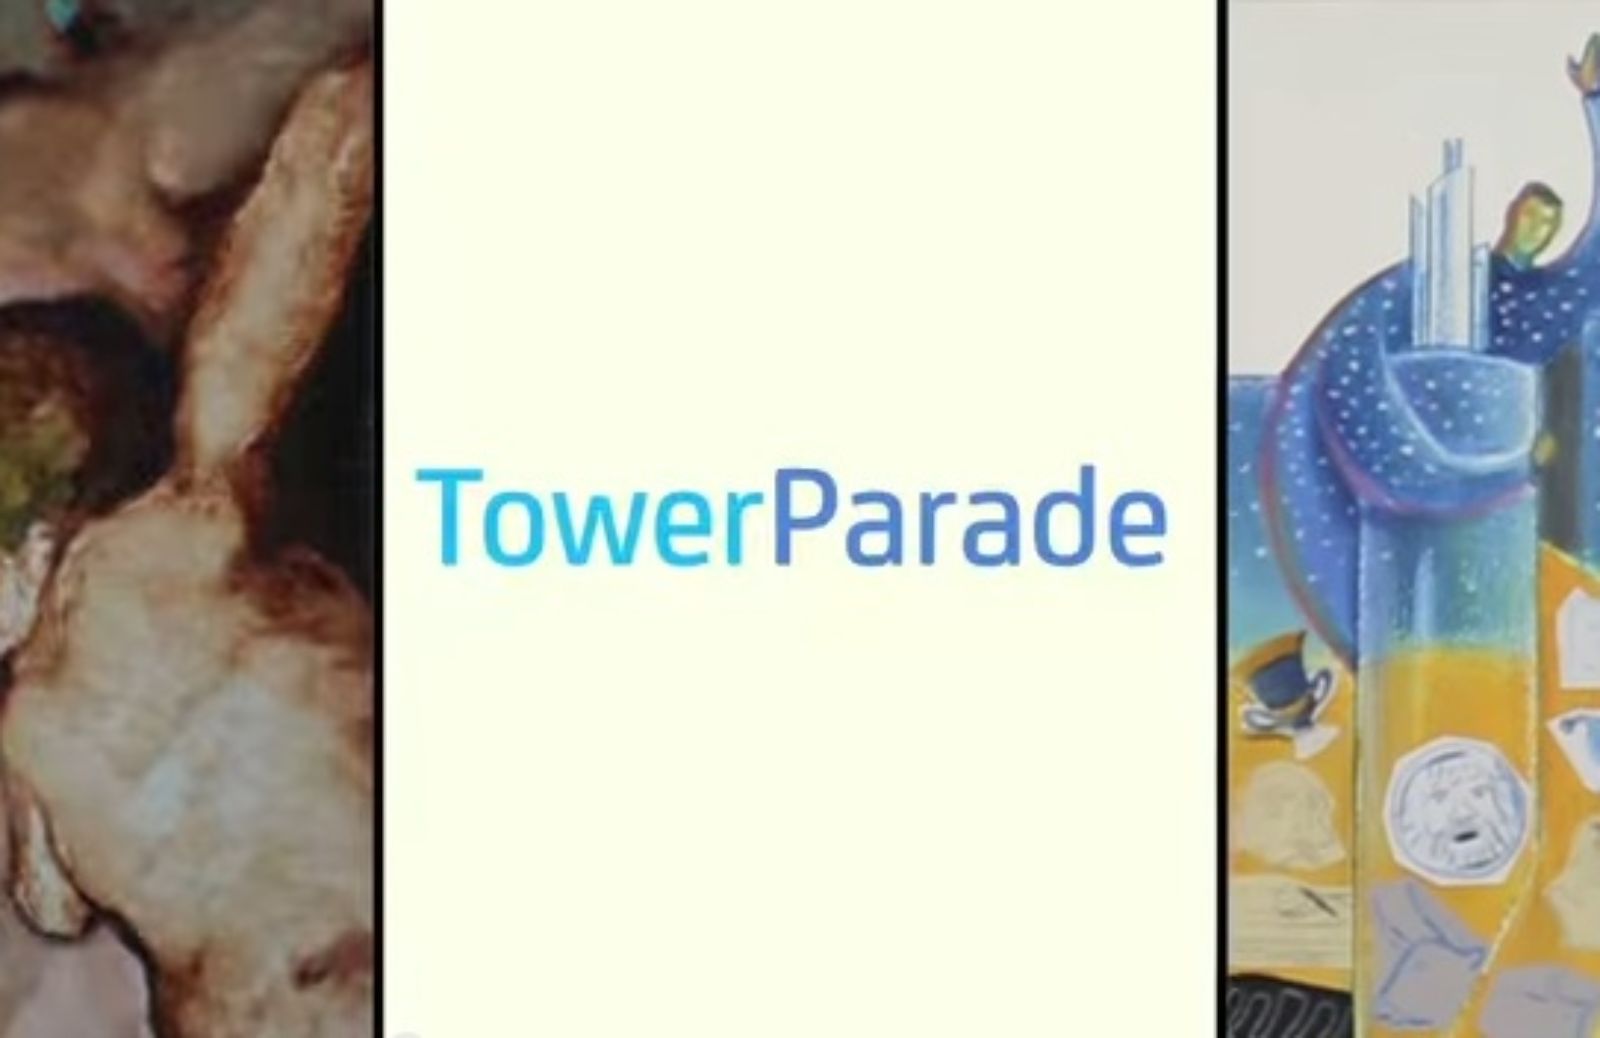 Tower Parade: UniCredit sceglie l'arte e sostiene la creatività dei giovani